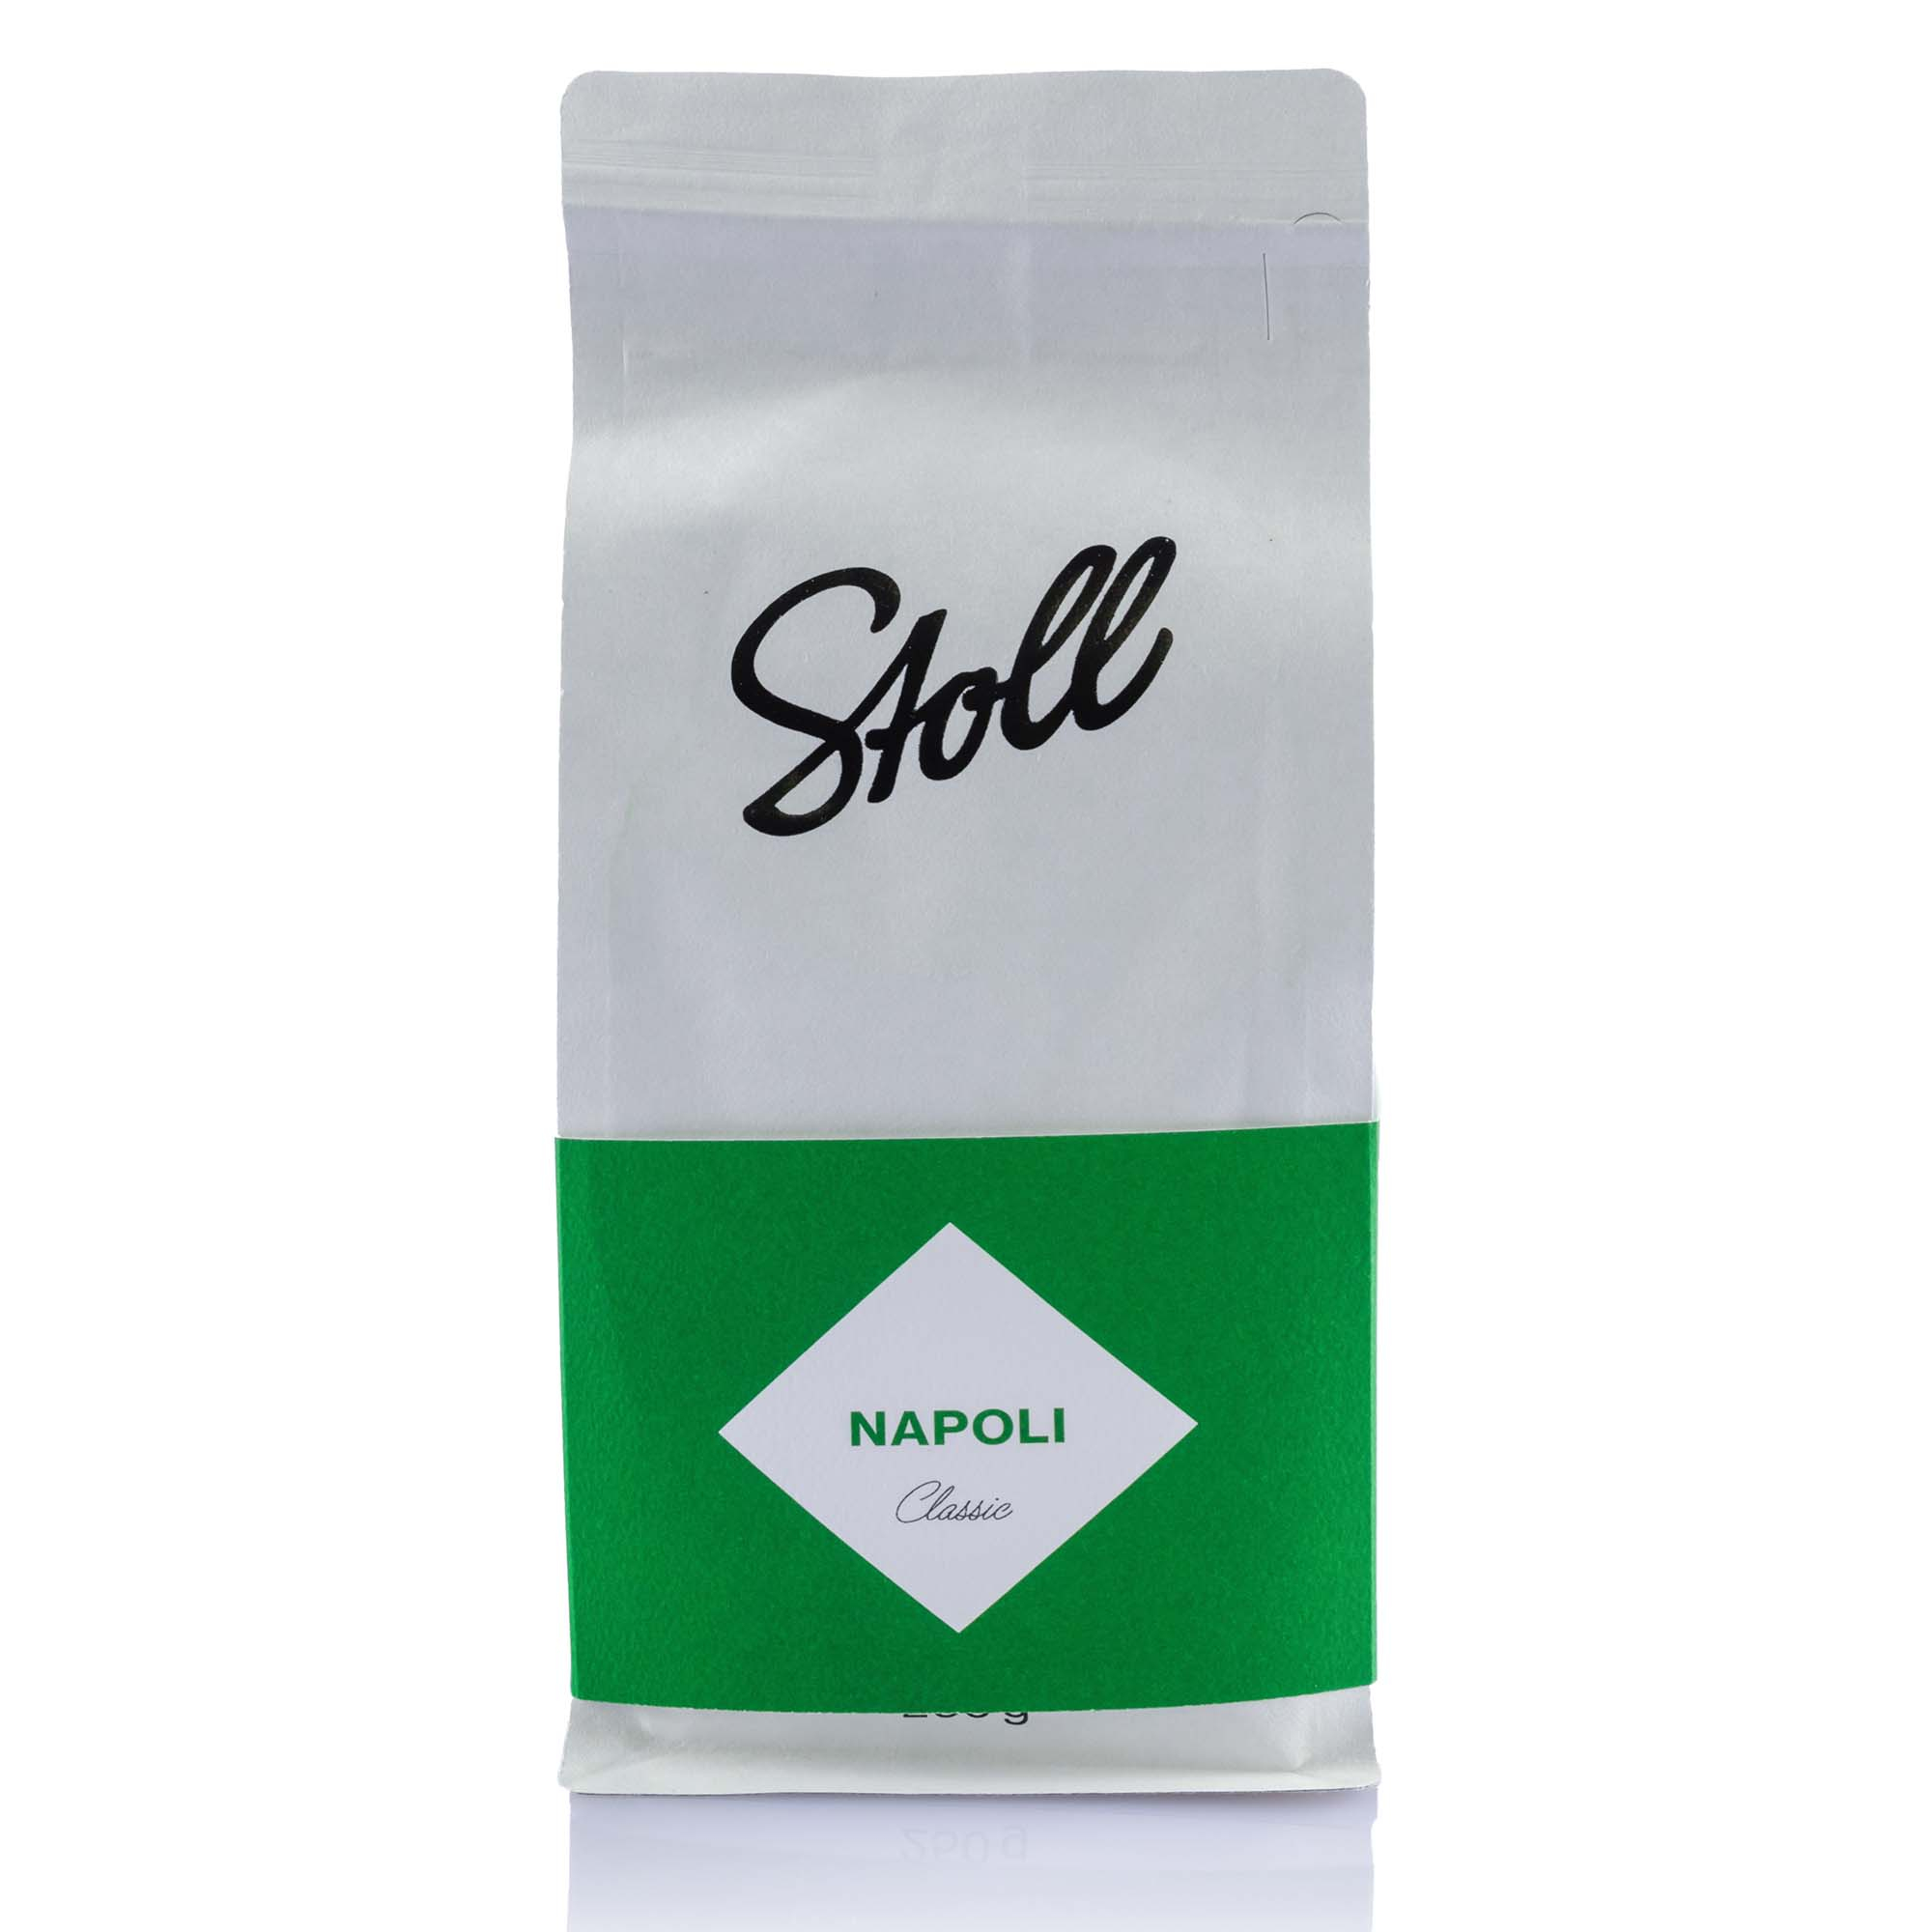 Kaffee Napoli Espresso von Stoll Kaffee, 250g